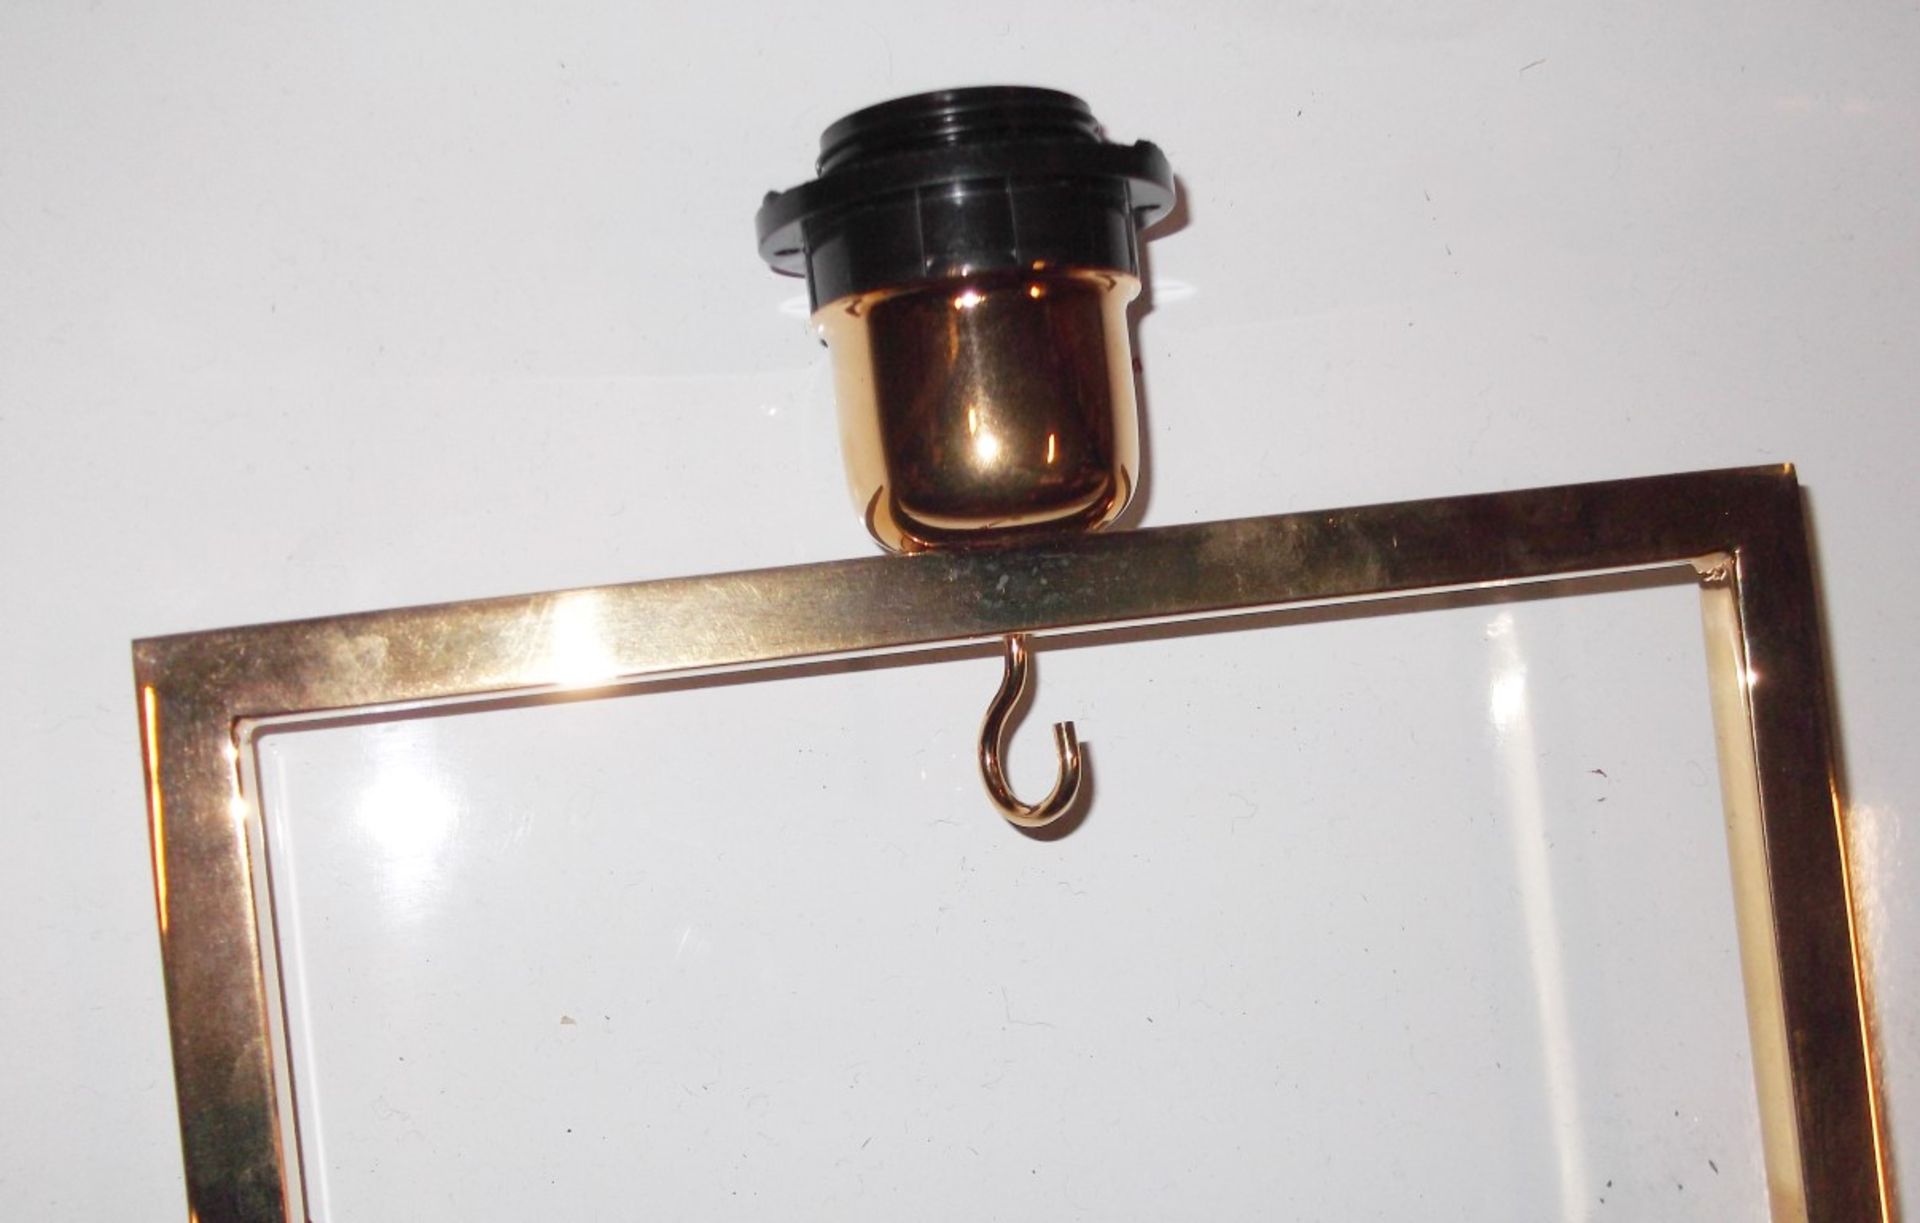 1 x FRATO Accra Floor Lamp - Colour: Gold - Ref: 5071027 - CL087 - Location: Altrincham WA14 - - Image 2 of 3